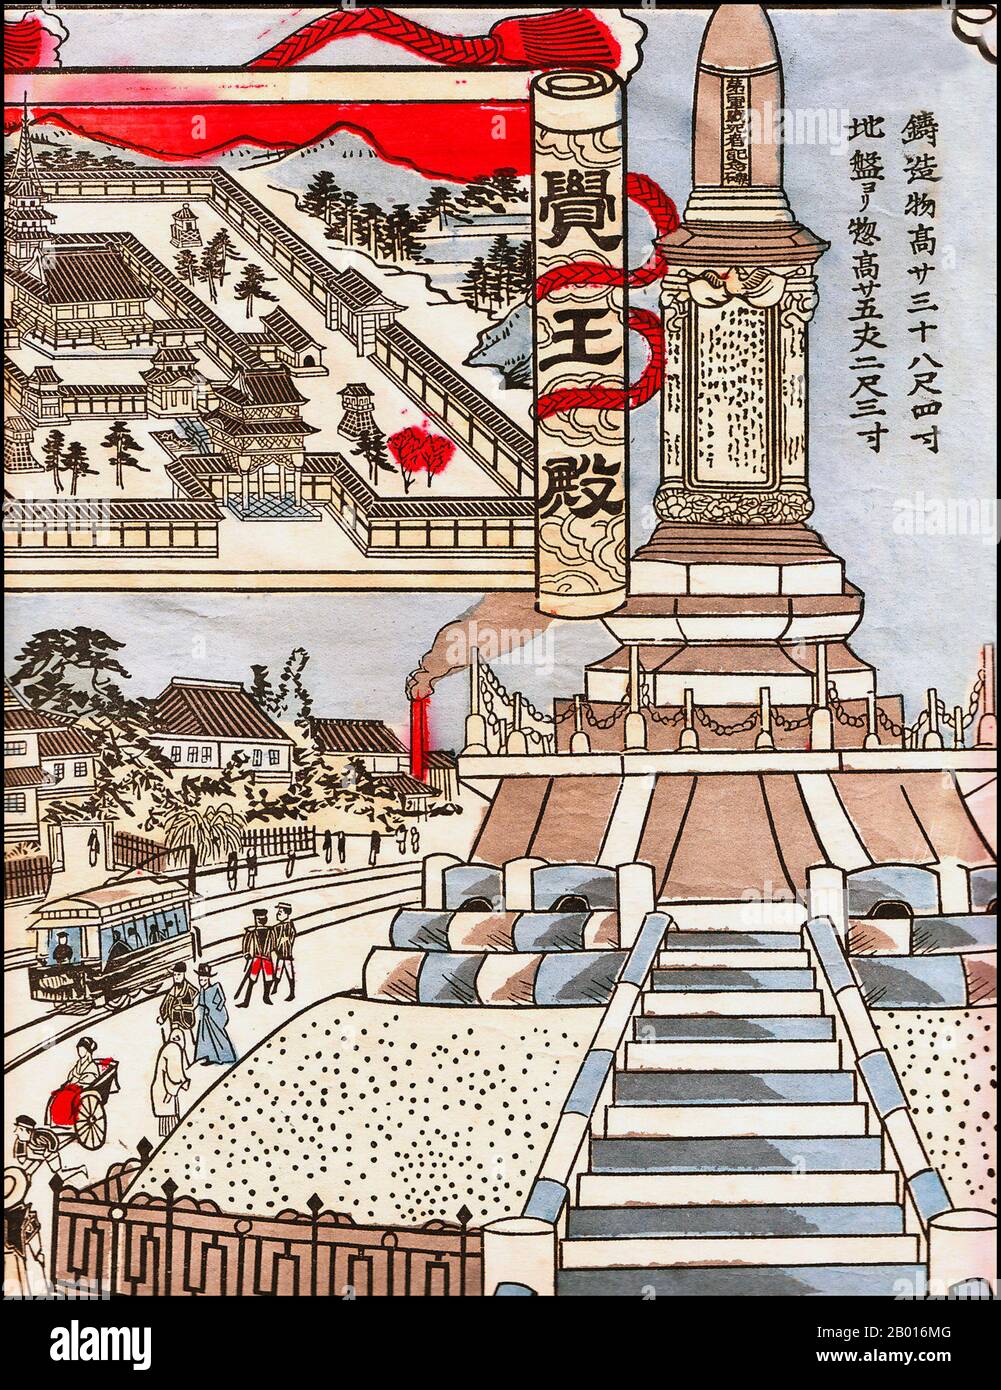 Japón: 'Monumento conmemorativo a la Primera Guerra Sino-Japonesa (1894 – 1895), Nagoya'. Estampado de bloques de madera ukiyo-e, 1903. La Primera Guerra Sino-Japonesa (1 de agosto de 1894 - 17 de abril de 1895) se libró entre la China de la Dinastía Qing y el Japón Meiji, principalmente sobre el control de Corea. Después de más de seis meses de continuos éxitos del ejército y las fuerzas navales japonesas y de la pérdida del puerto chino de Weihaiwei, los dirigentes de Qing demandaron la paz en febrero de 1895. Foto de stock